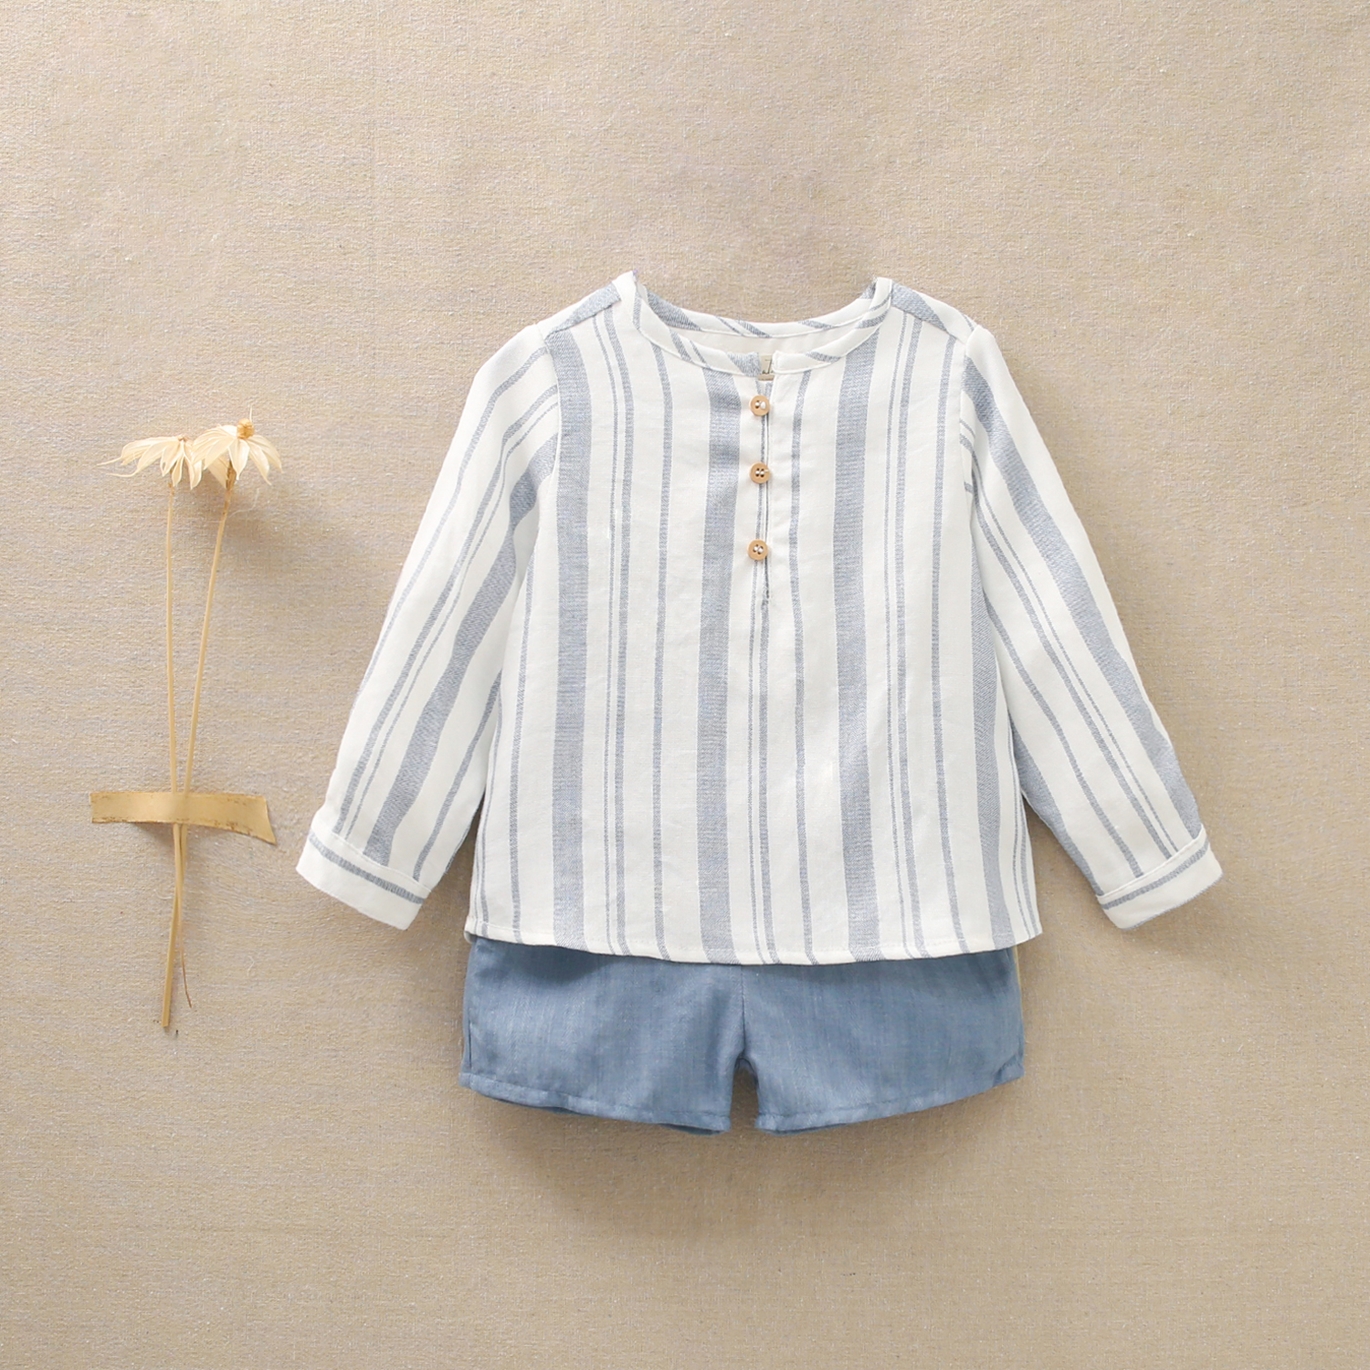 Imagen de Conjunto de bebé niño con camisa de rayas azules y blancas y pantalón azul